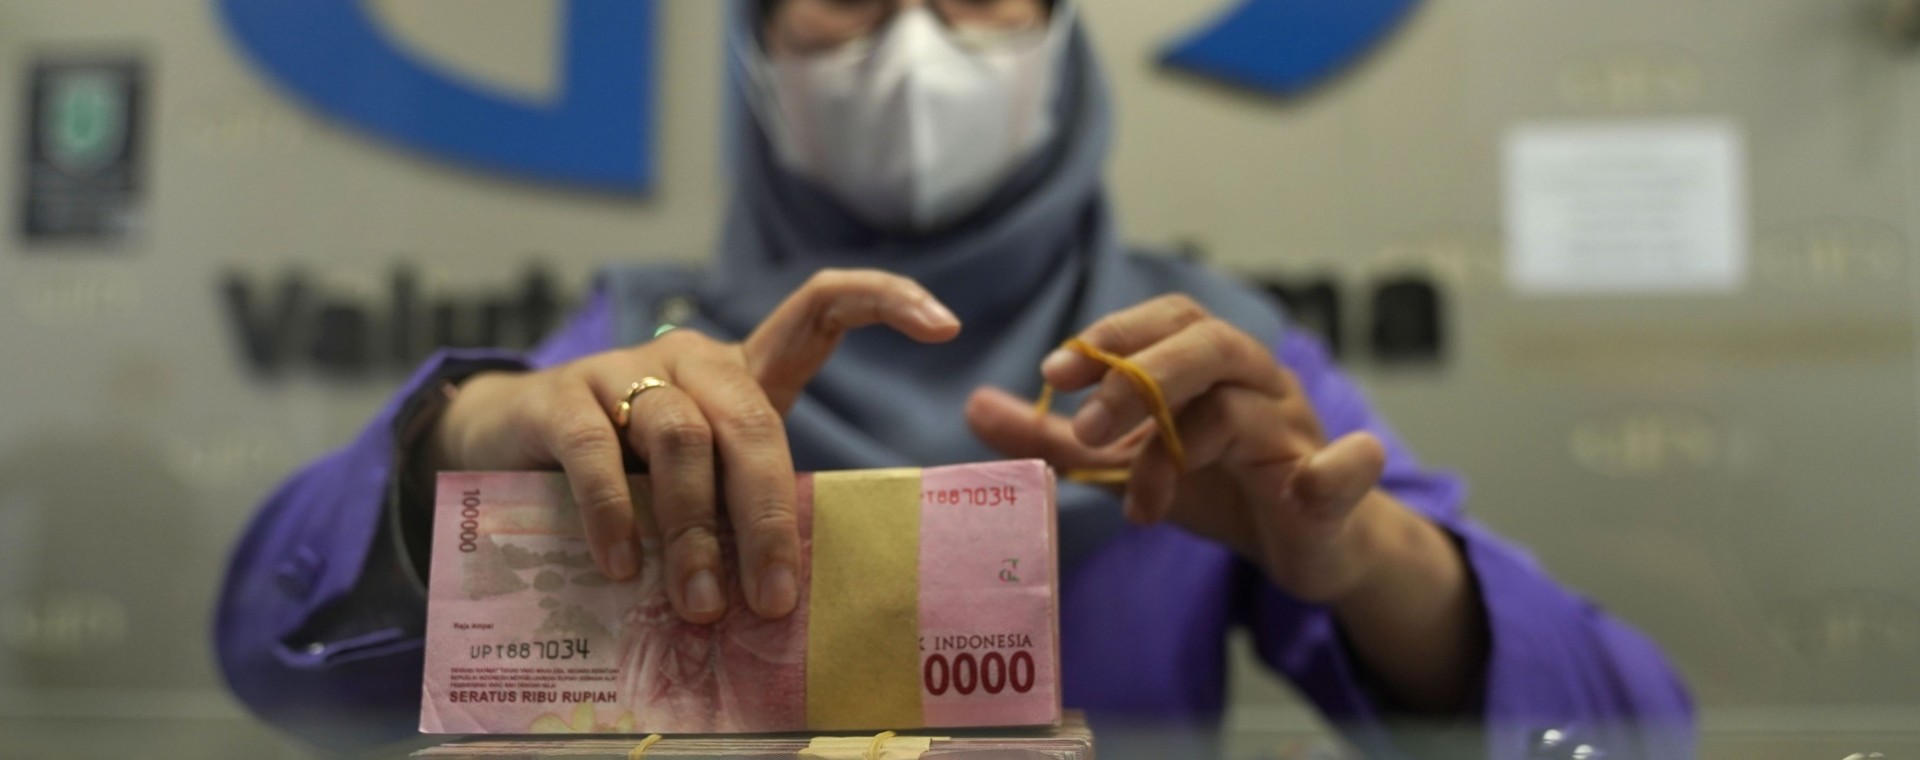 Seorang pekerja mengatur bundel uang kertas Rp100.000 di kantor penukaran mata uang di Jakarta, Rabu, (2/3/2022). Bloomberg - Dimas Ardian